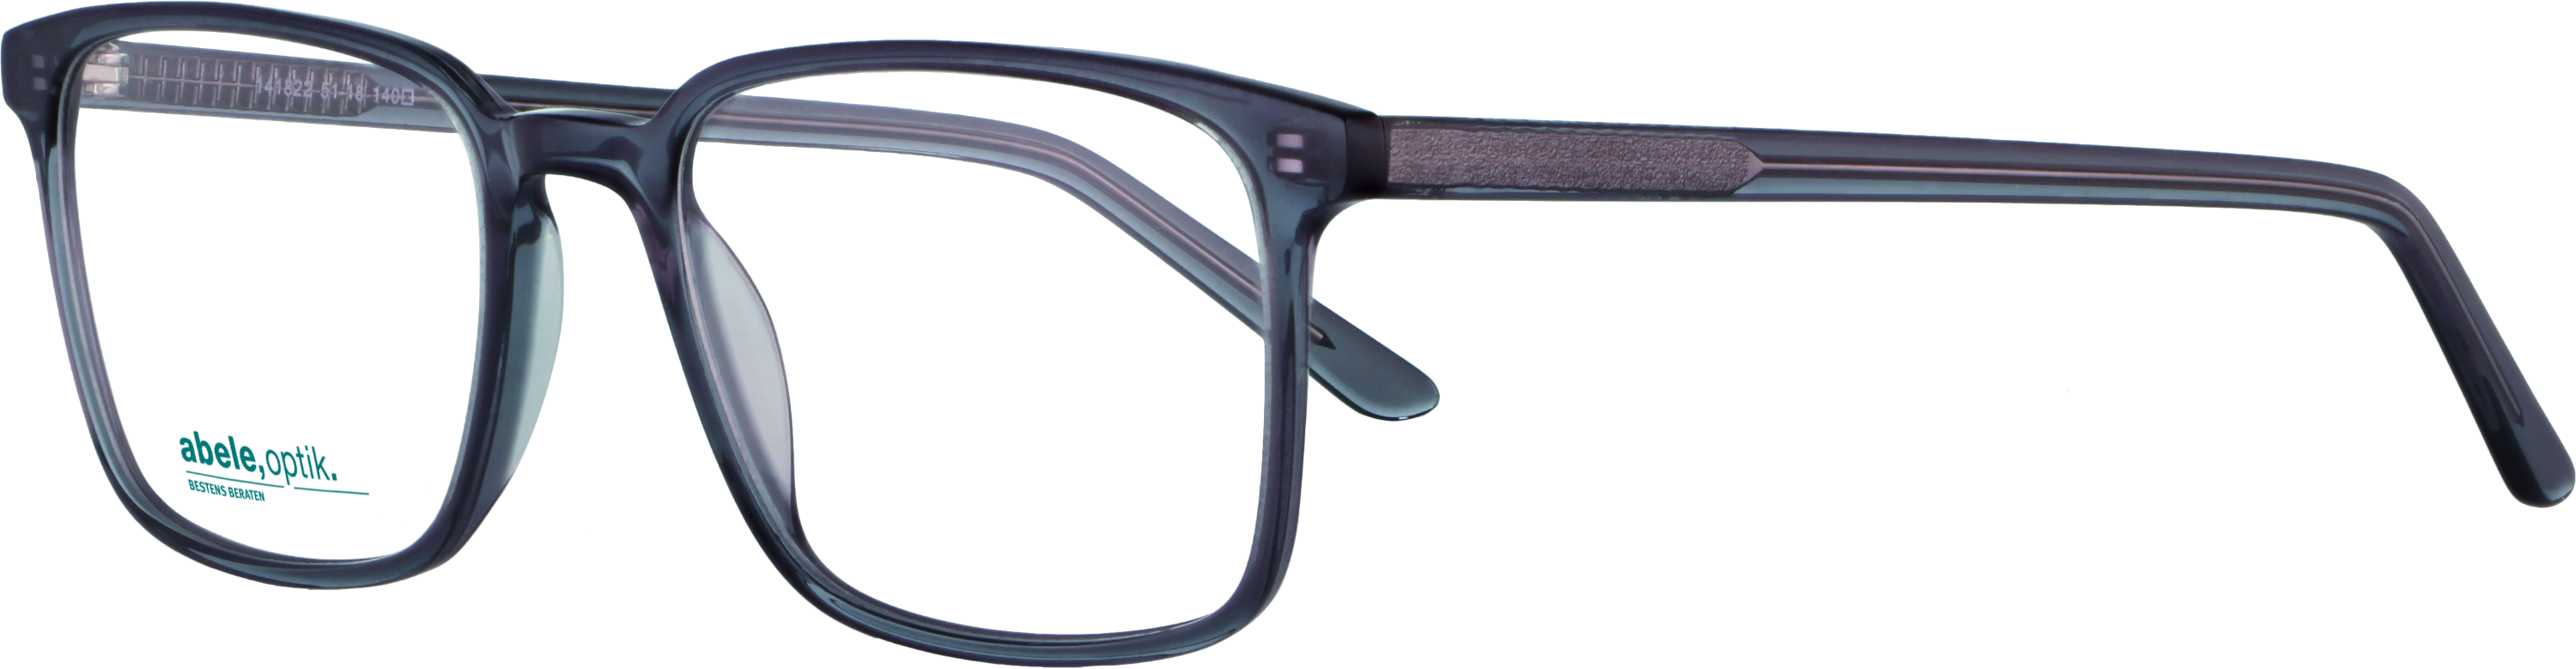 Das Bild zeigt die Korrektionsbrille 141822 von der Marke Abele Optik in graublau transparent.